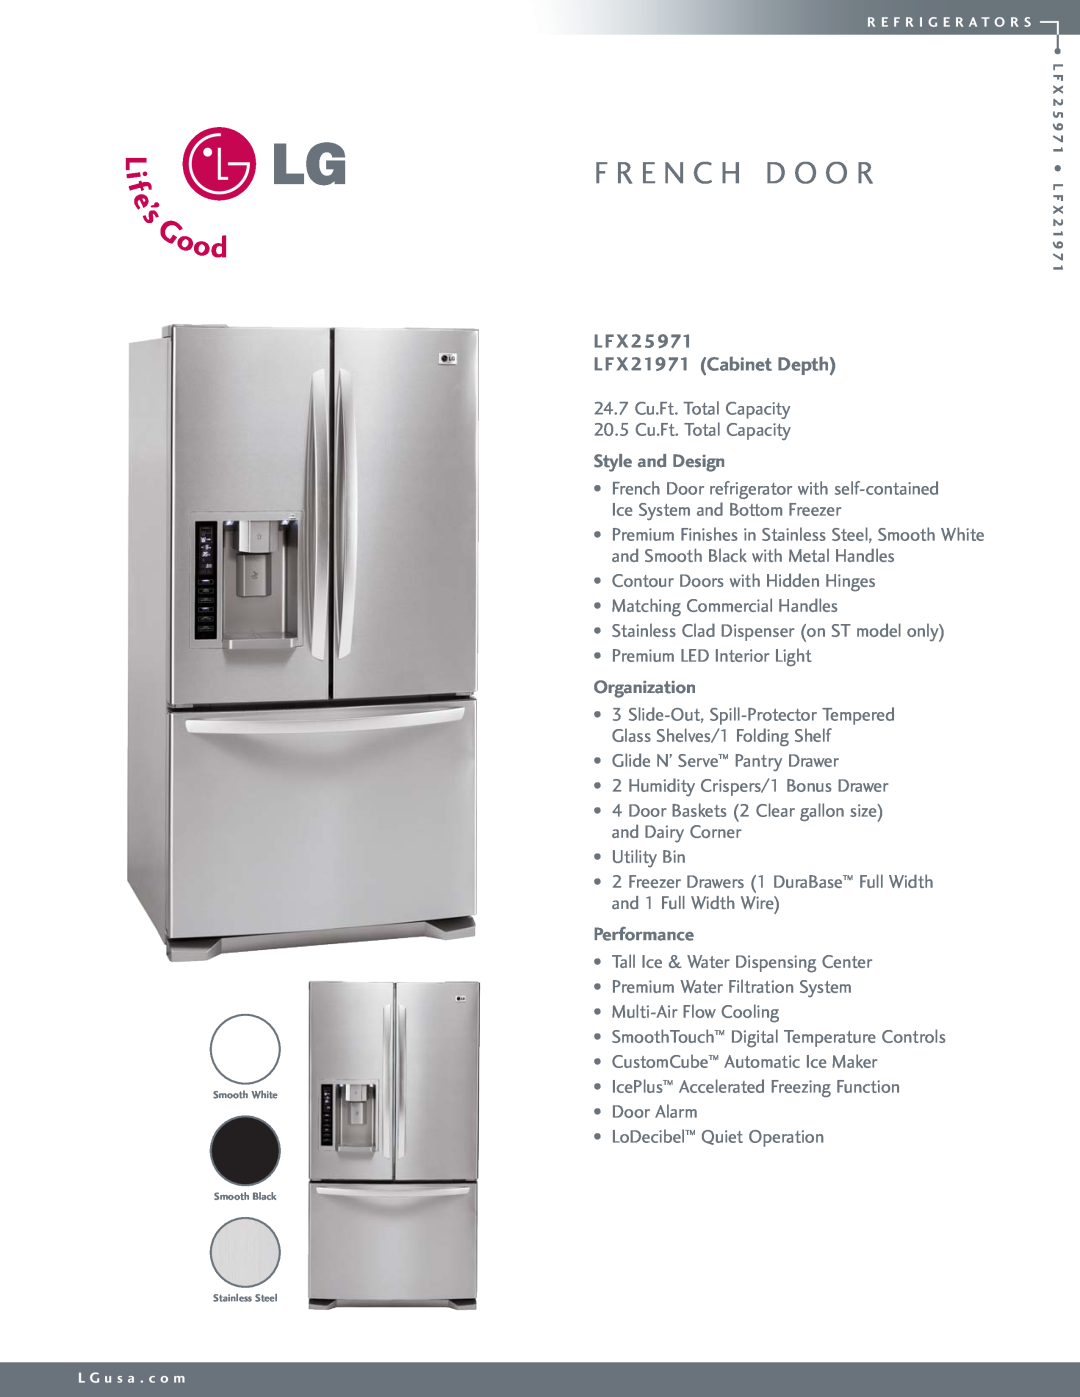 LG Electronics LFX21971 manual L F X L F X 21971 Cabinet Depth, F R E N C H D O O R, Style and Design, Organization 